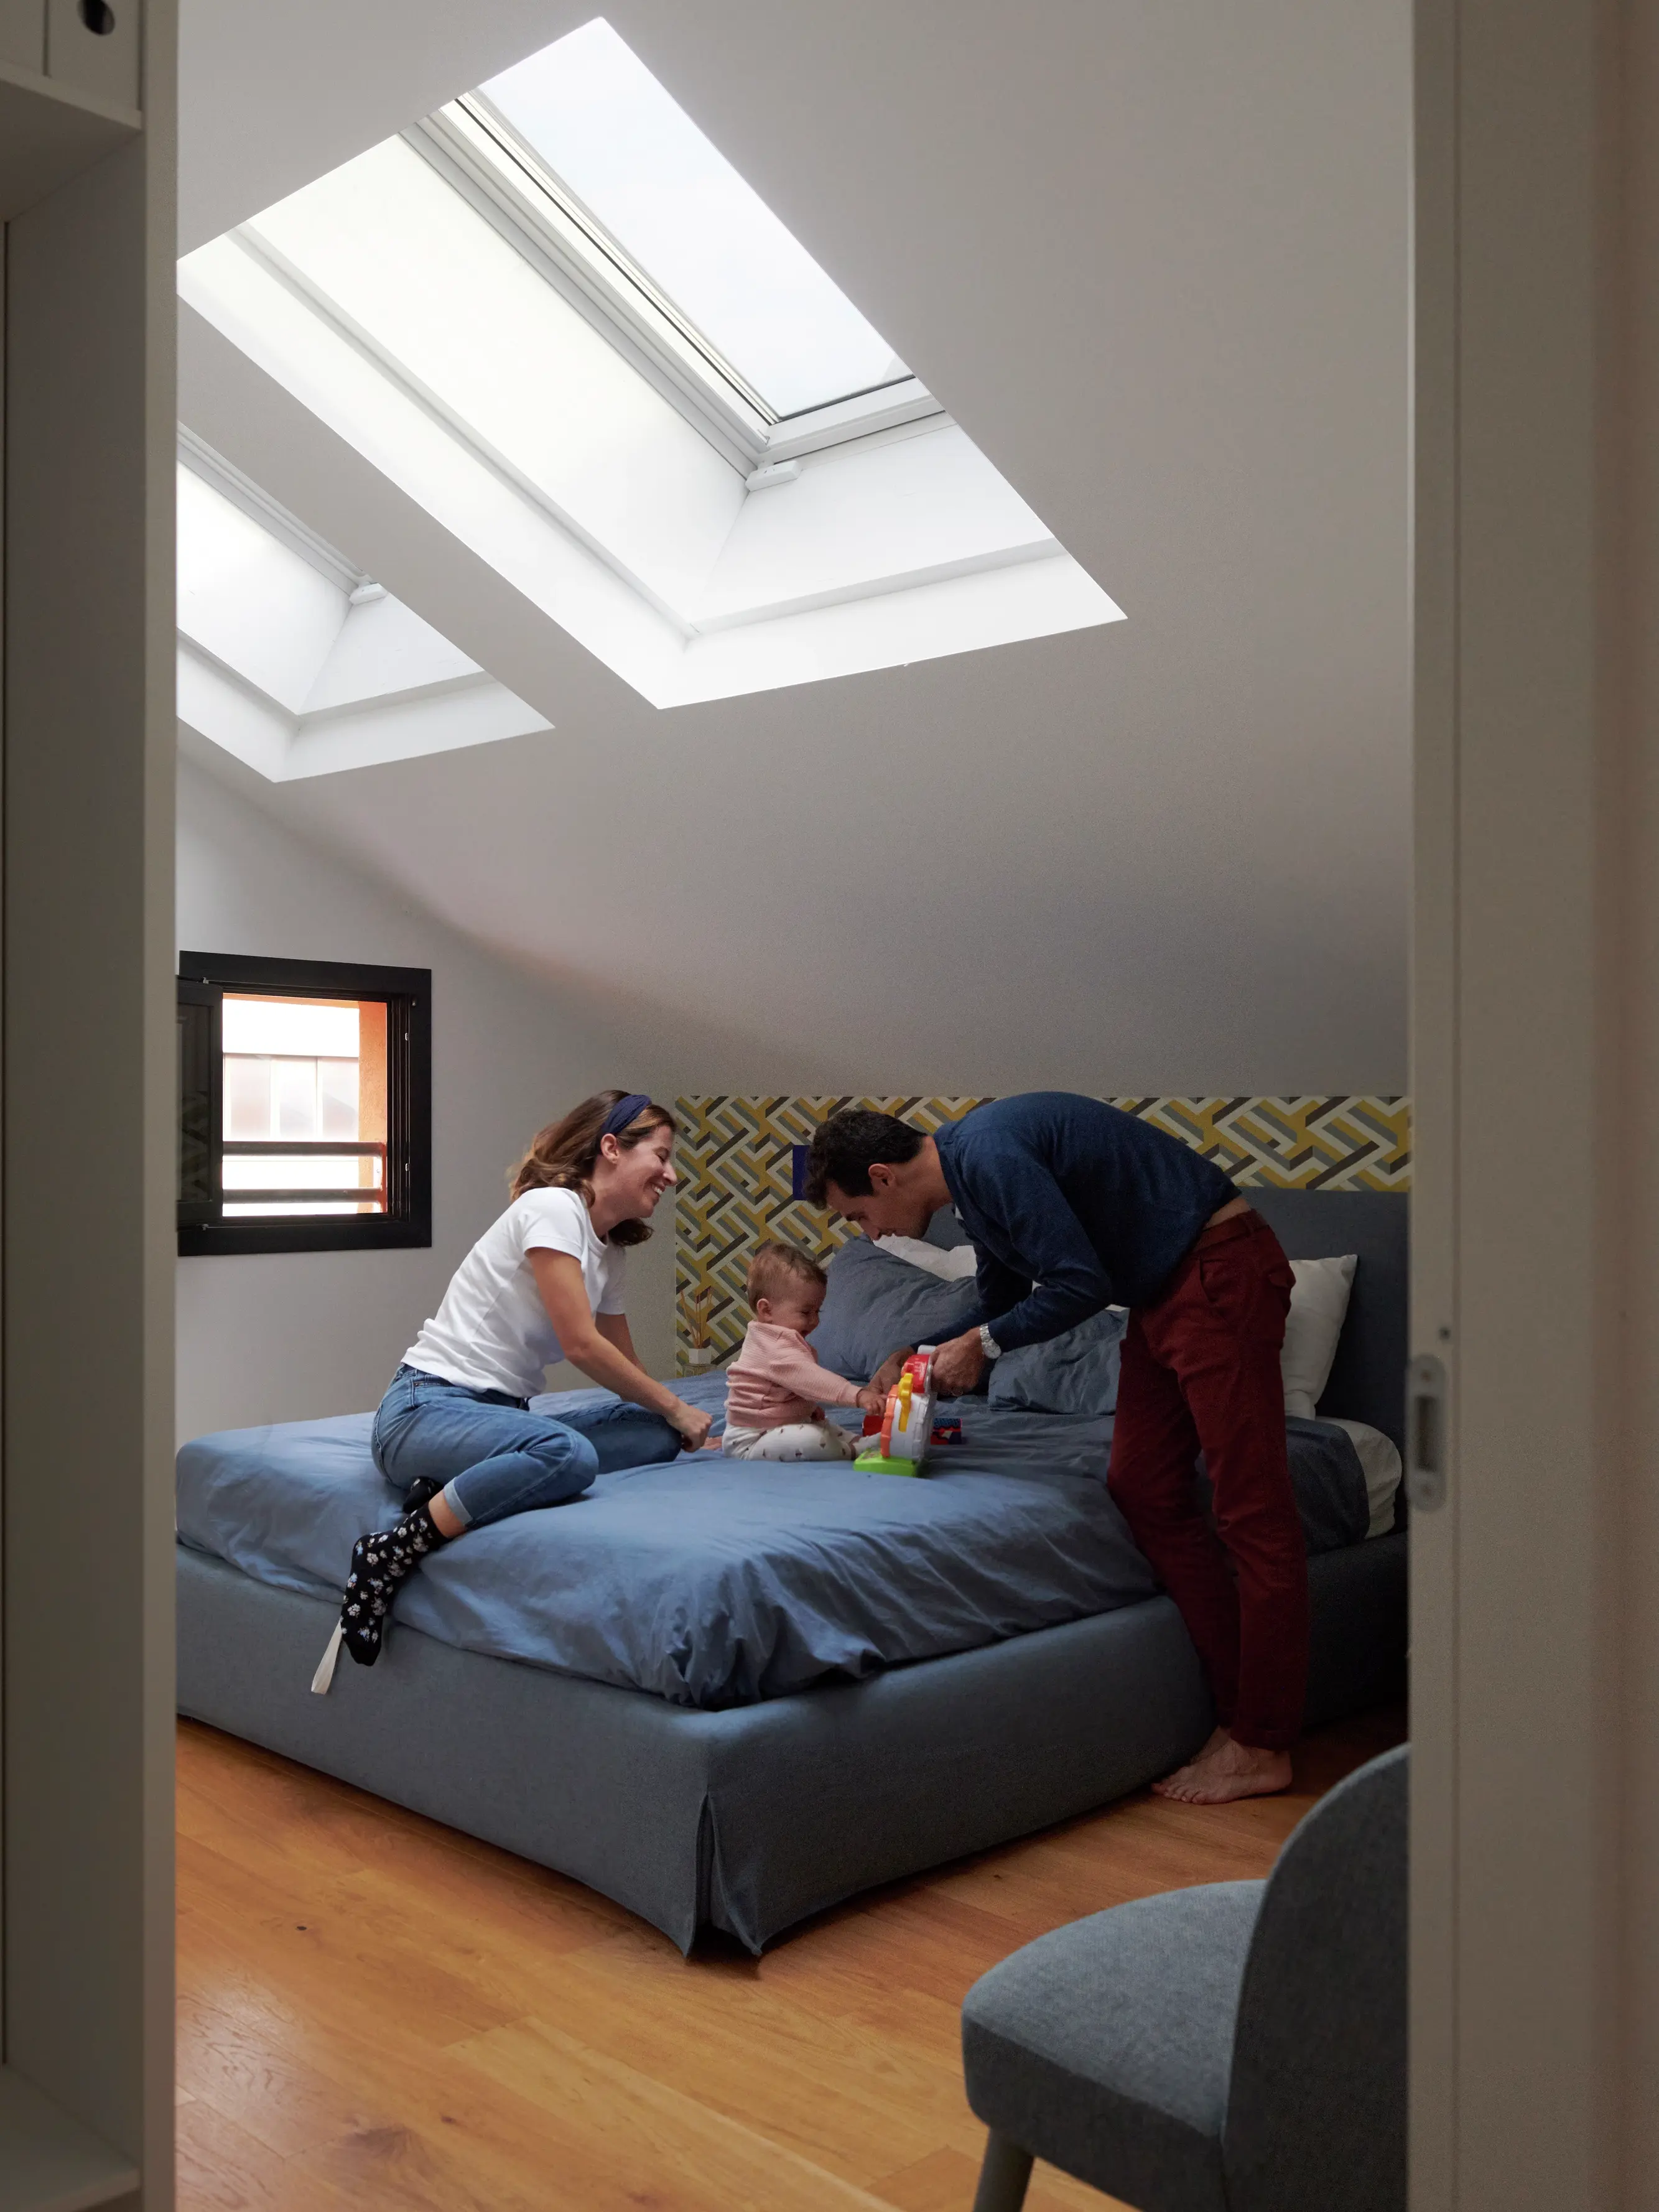 Famiglia che gioca sul letto in una stanza illuminata dal sole con una finestra per tetti VELUX.